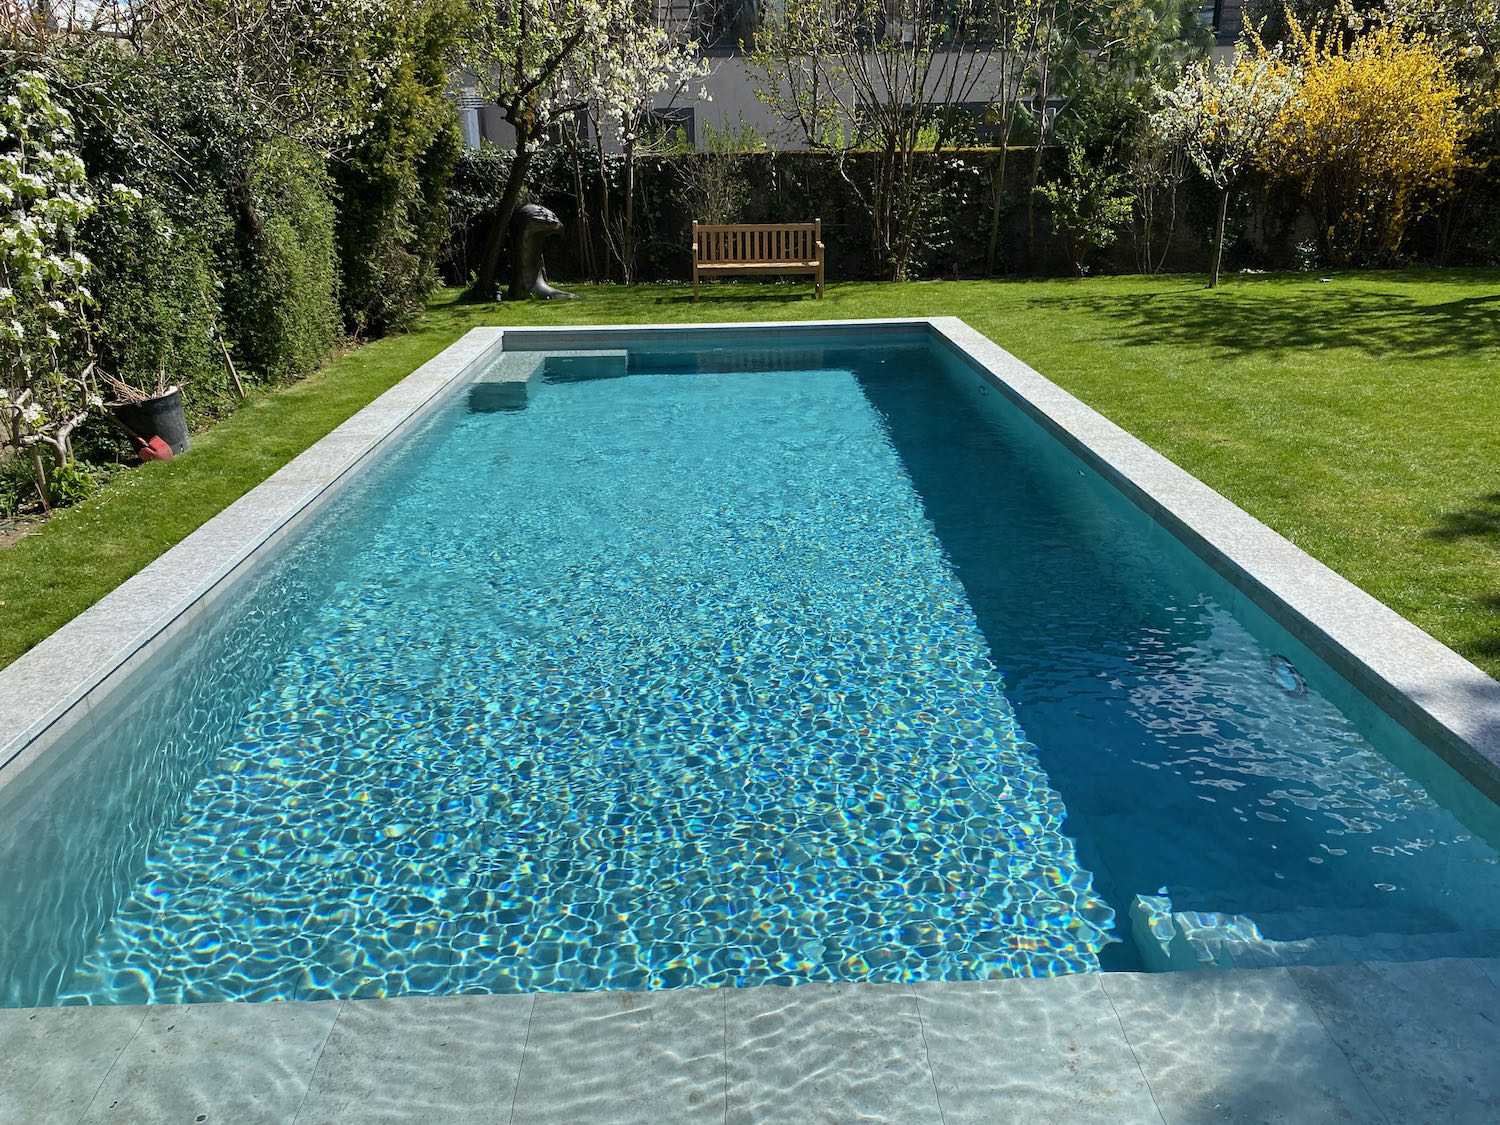 Création piscine avec carrelage, pierre naturelle et volet solaire